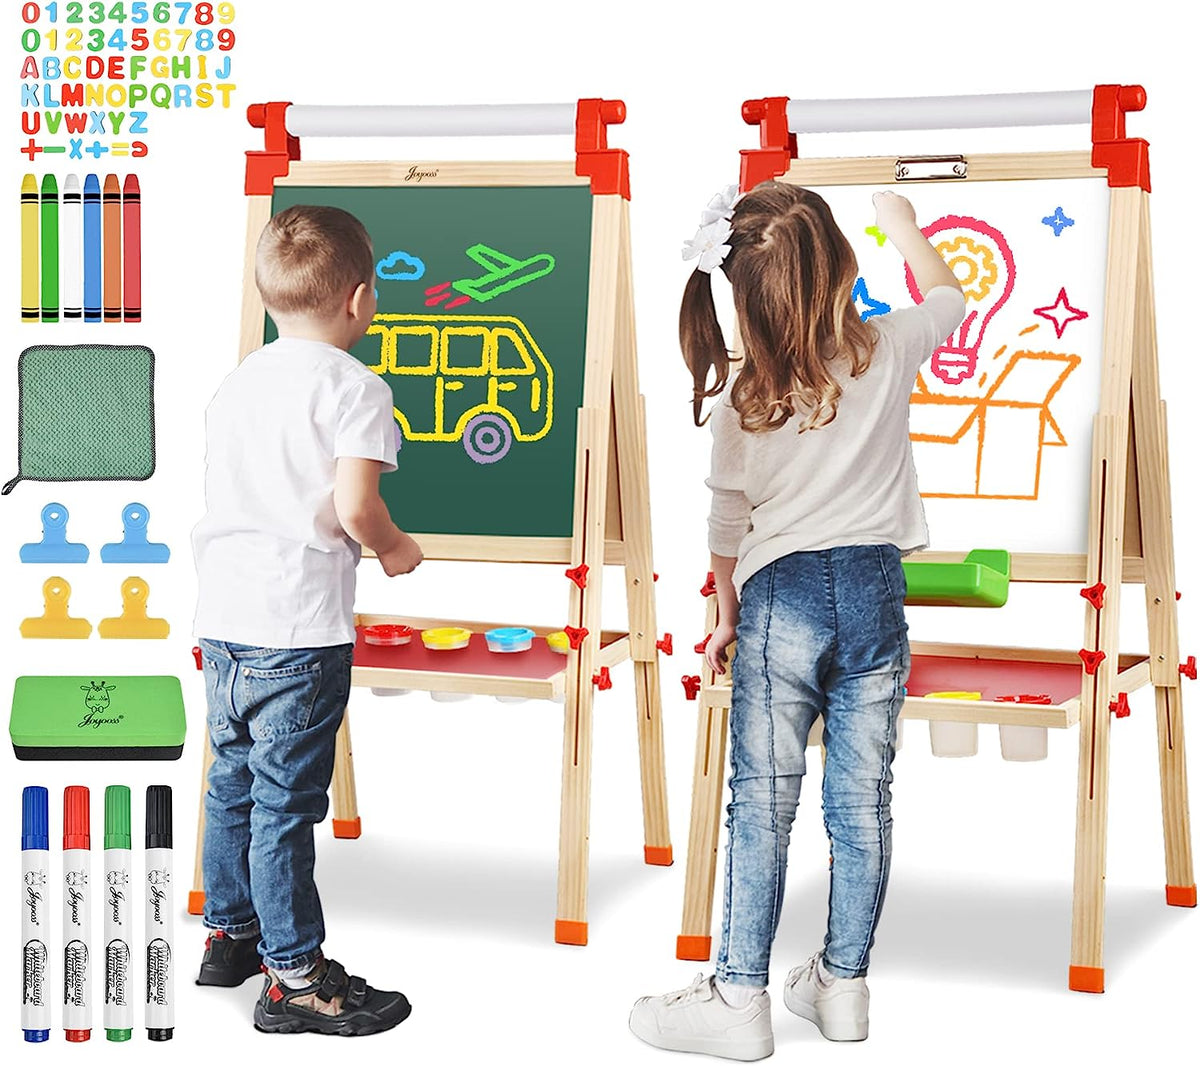 Joyooss Children Artist Easel, Adjustable Wooden Art Kids Easel with Magnetic Whiteboard & Chalkbaord, Easel for Kids with Paper Roll & Bonus Kids Art Supplies